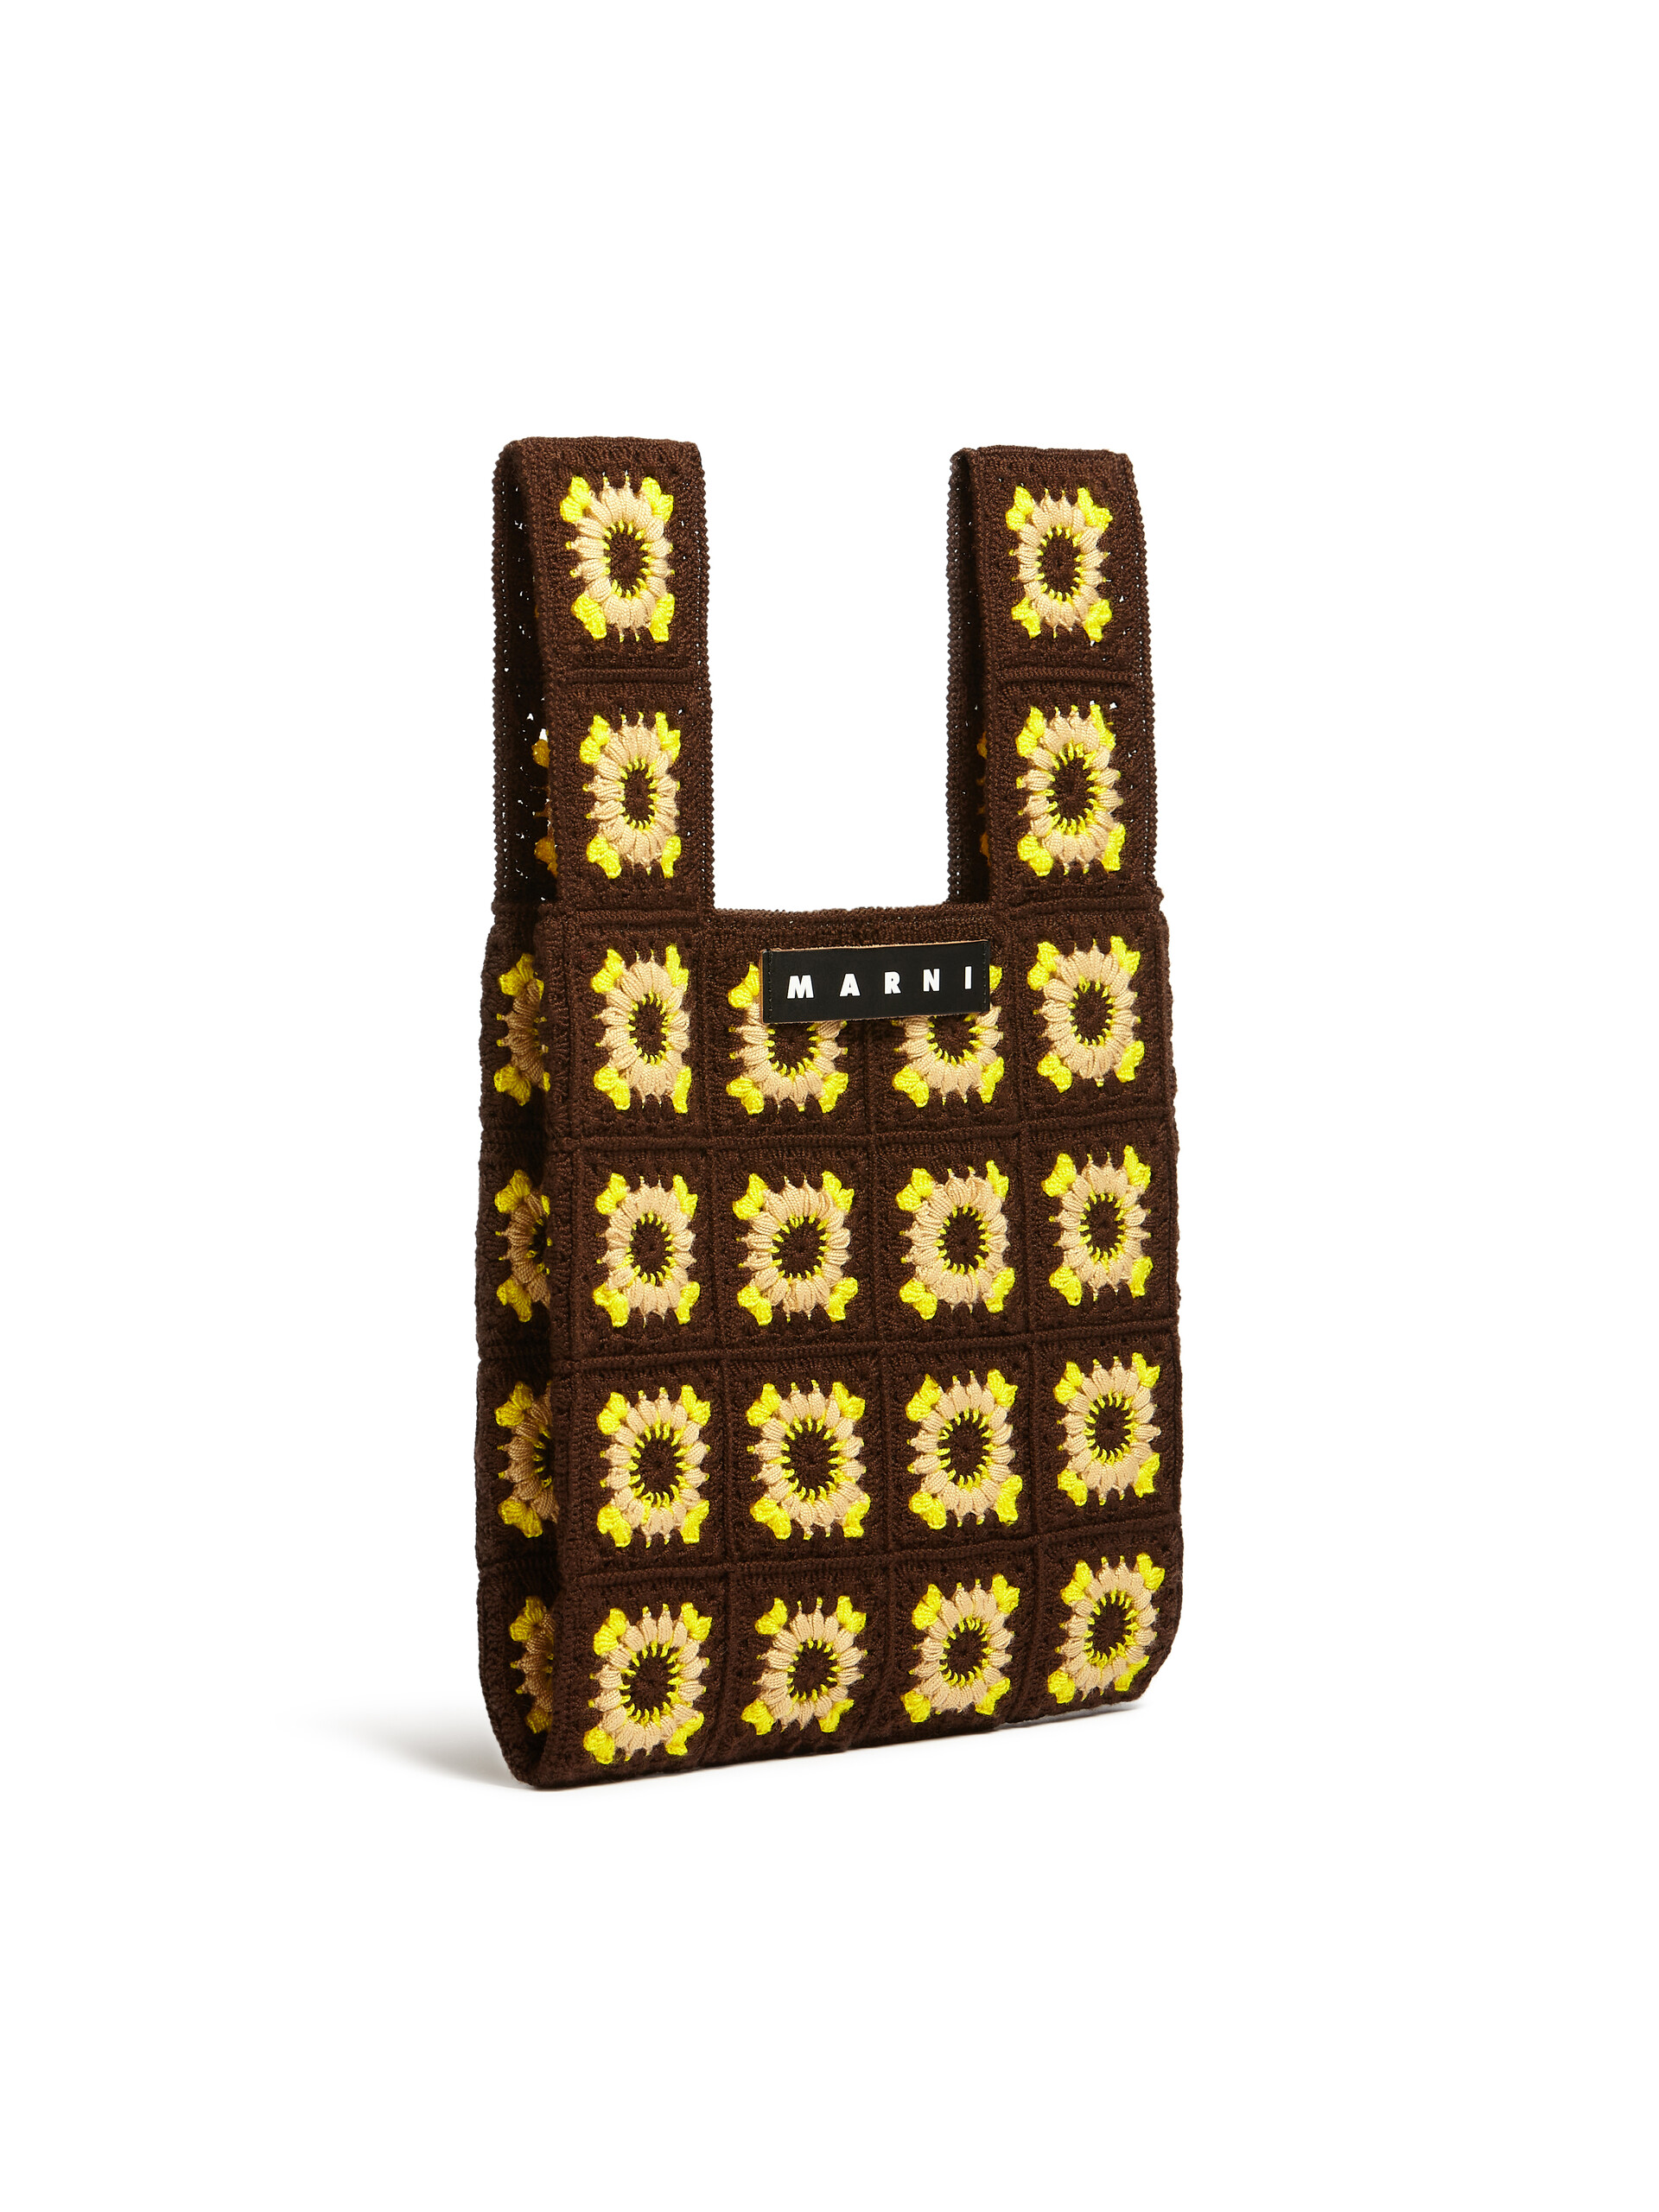 MARNI MARKET FISH bag in brown crochet - Bags - Image 2